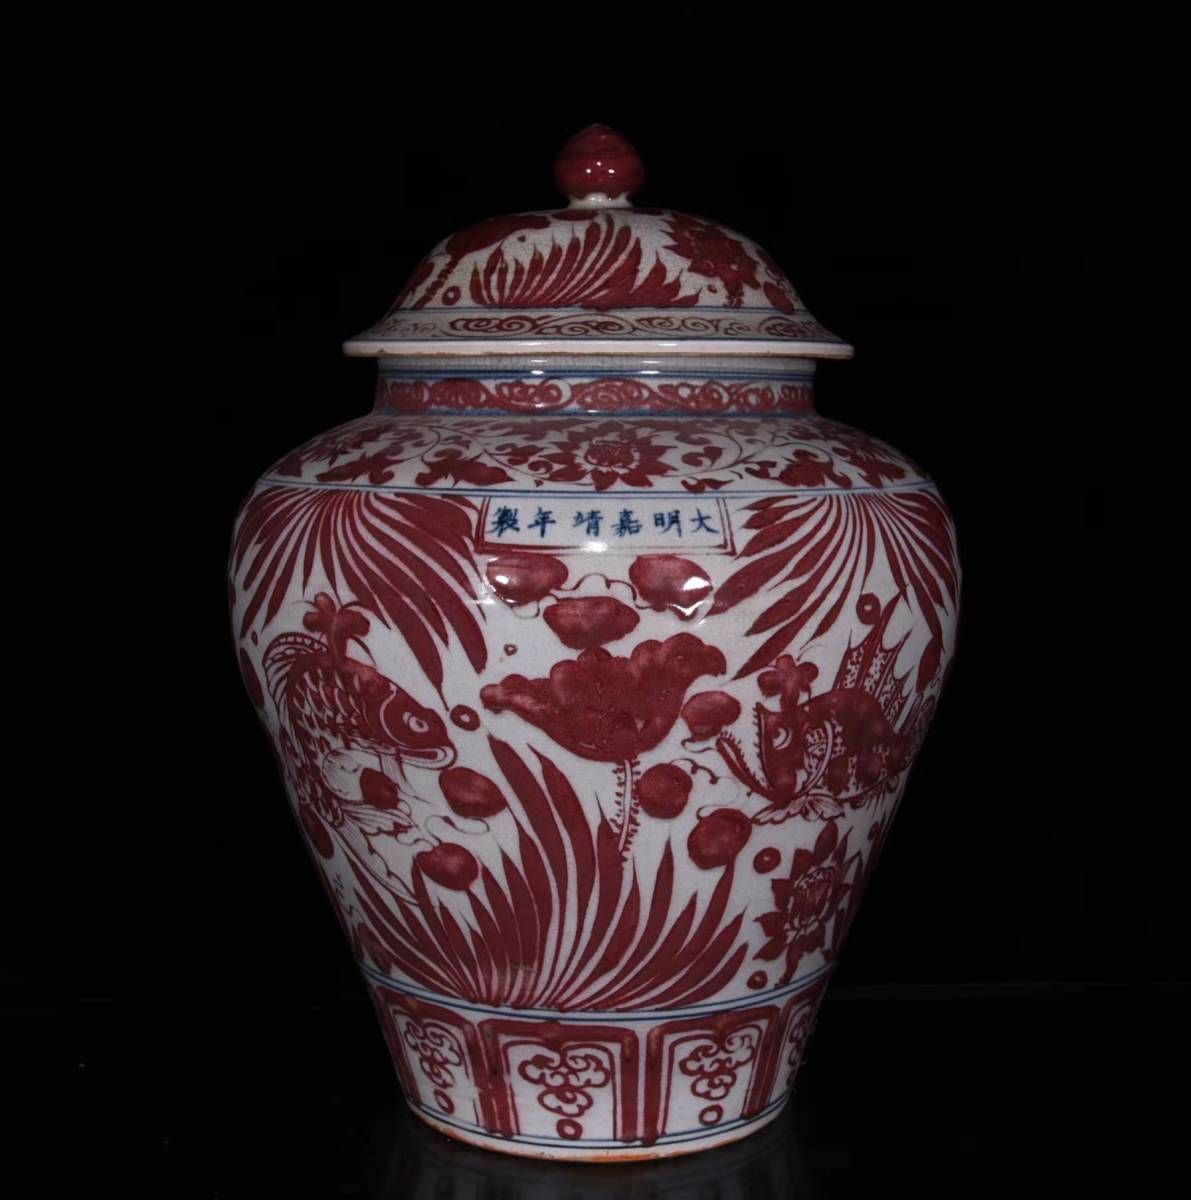 ◇旧蔵◇ 古美術 中国古玩 明代嘉靖年製款 釉里紅荷叶魚藻紋盖罐